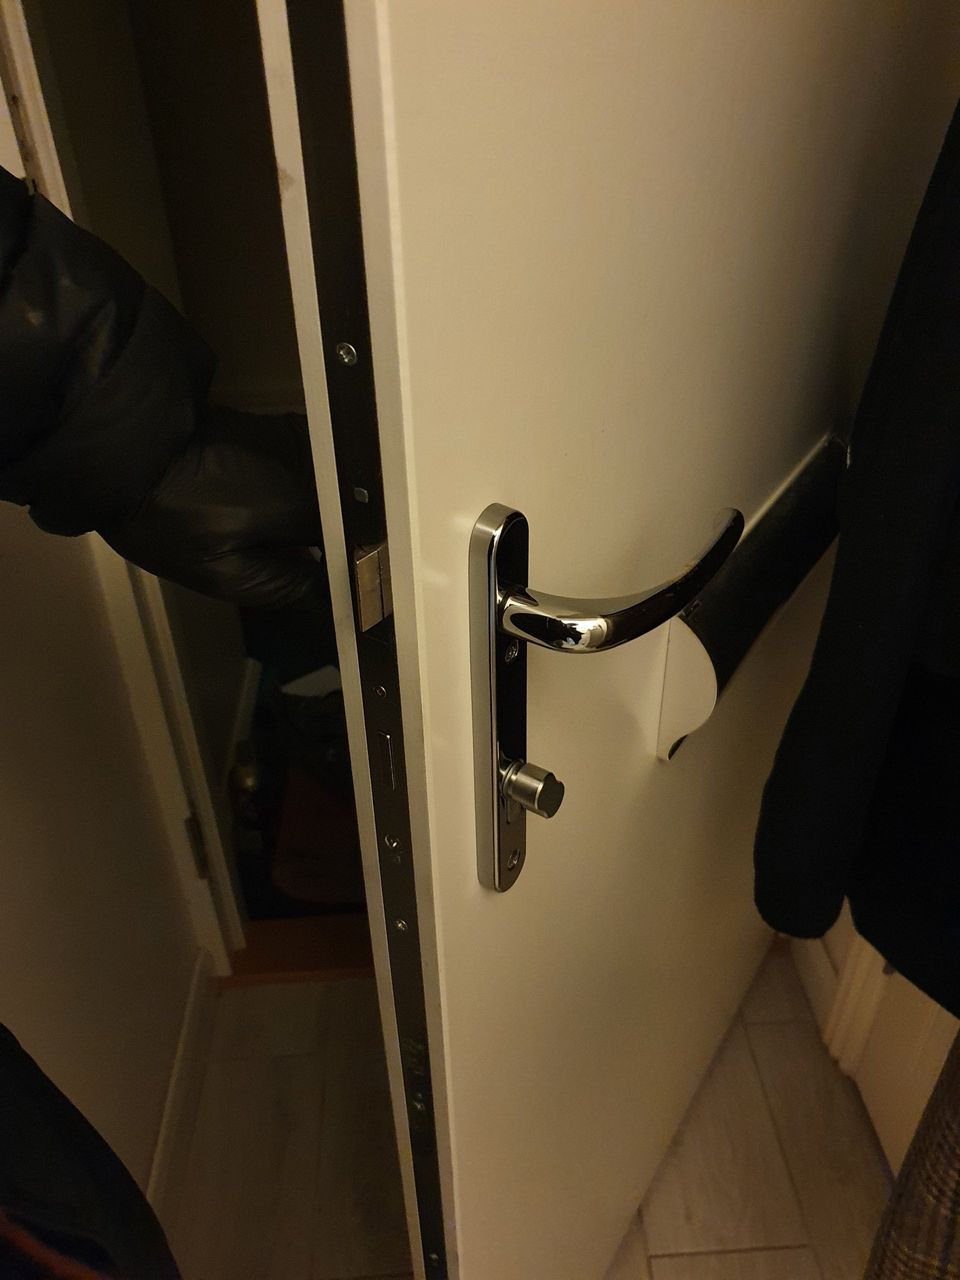 UPVC door lock change during Covid19